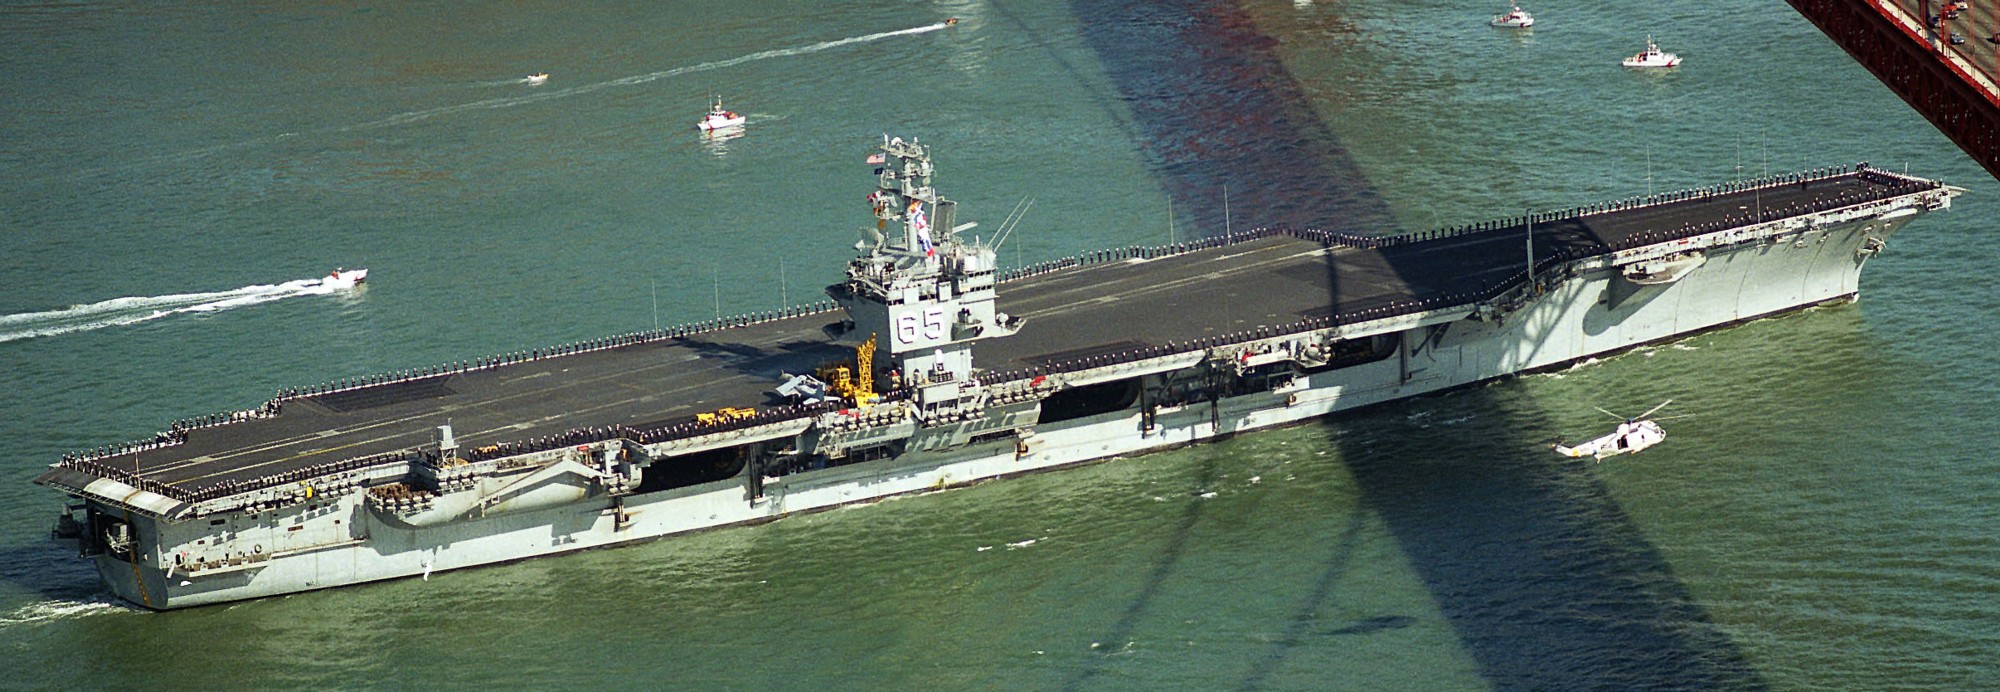 cvn-65 uss enterprise aircraft carrier us navy san francisco fleet week 1985 185